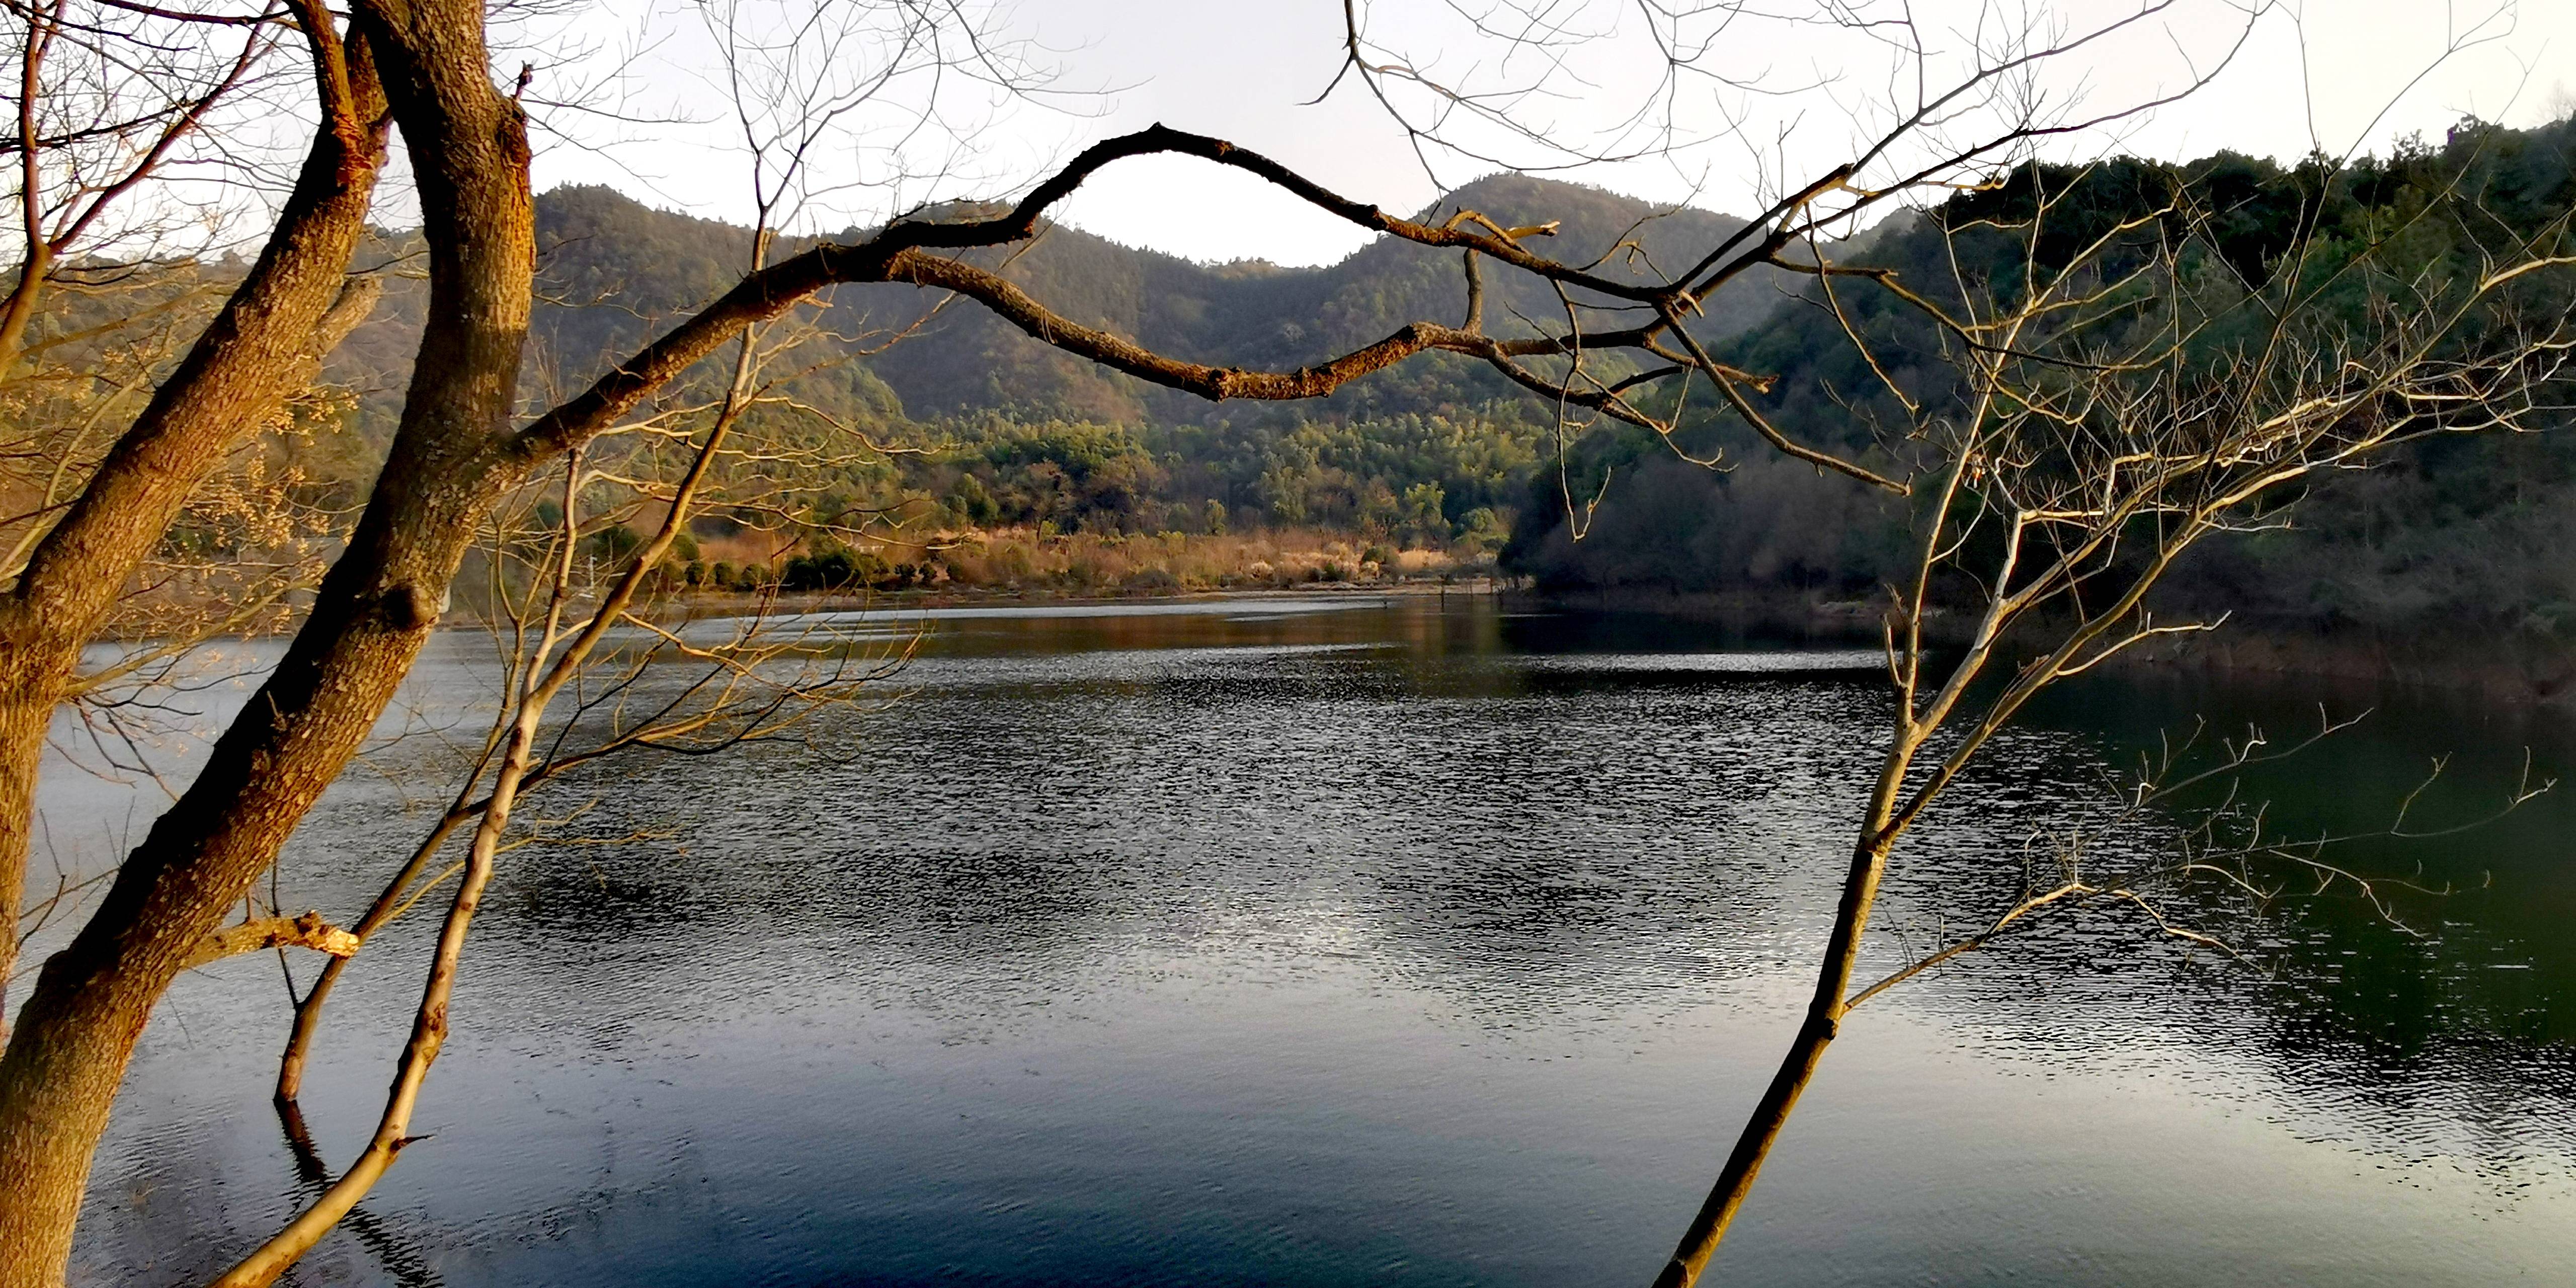 长沙梅溪湖区域新增一处森林公园:象鼻窝森林公园